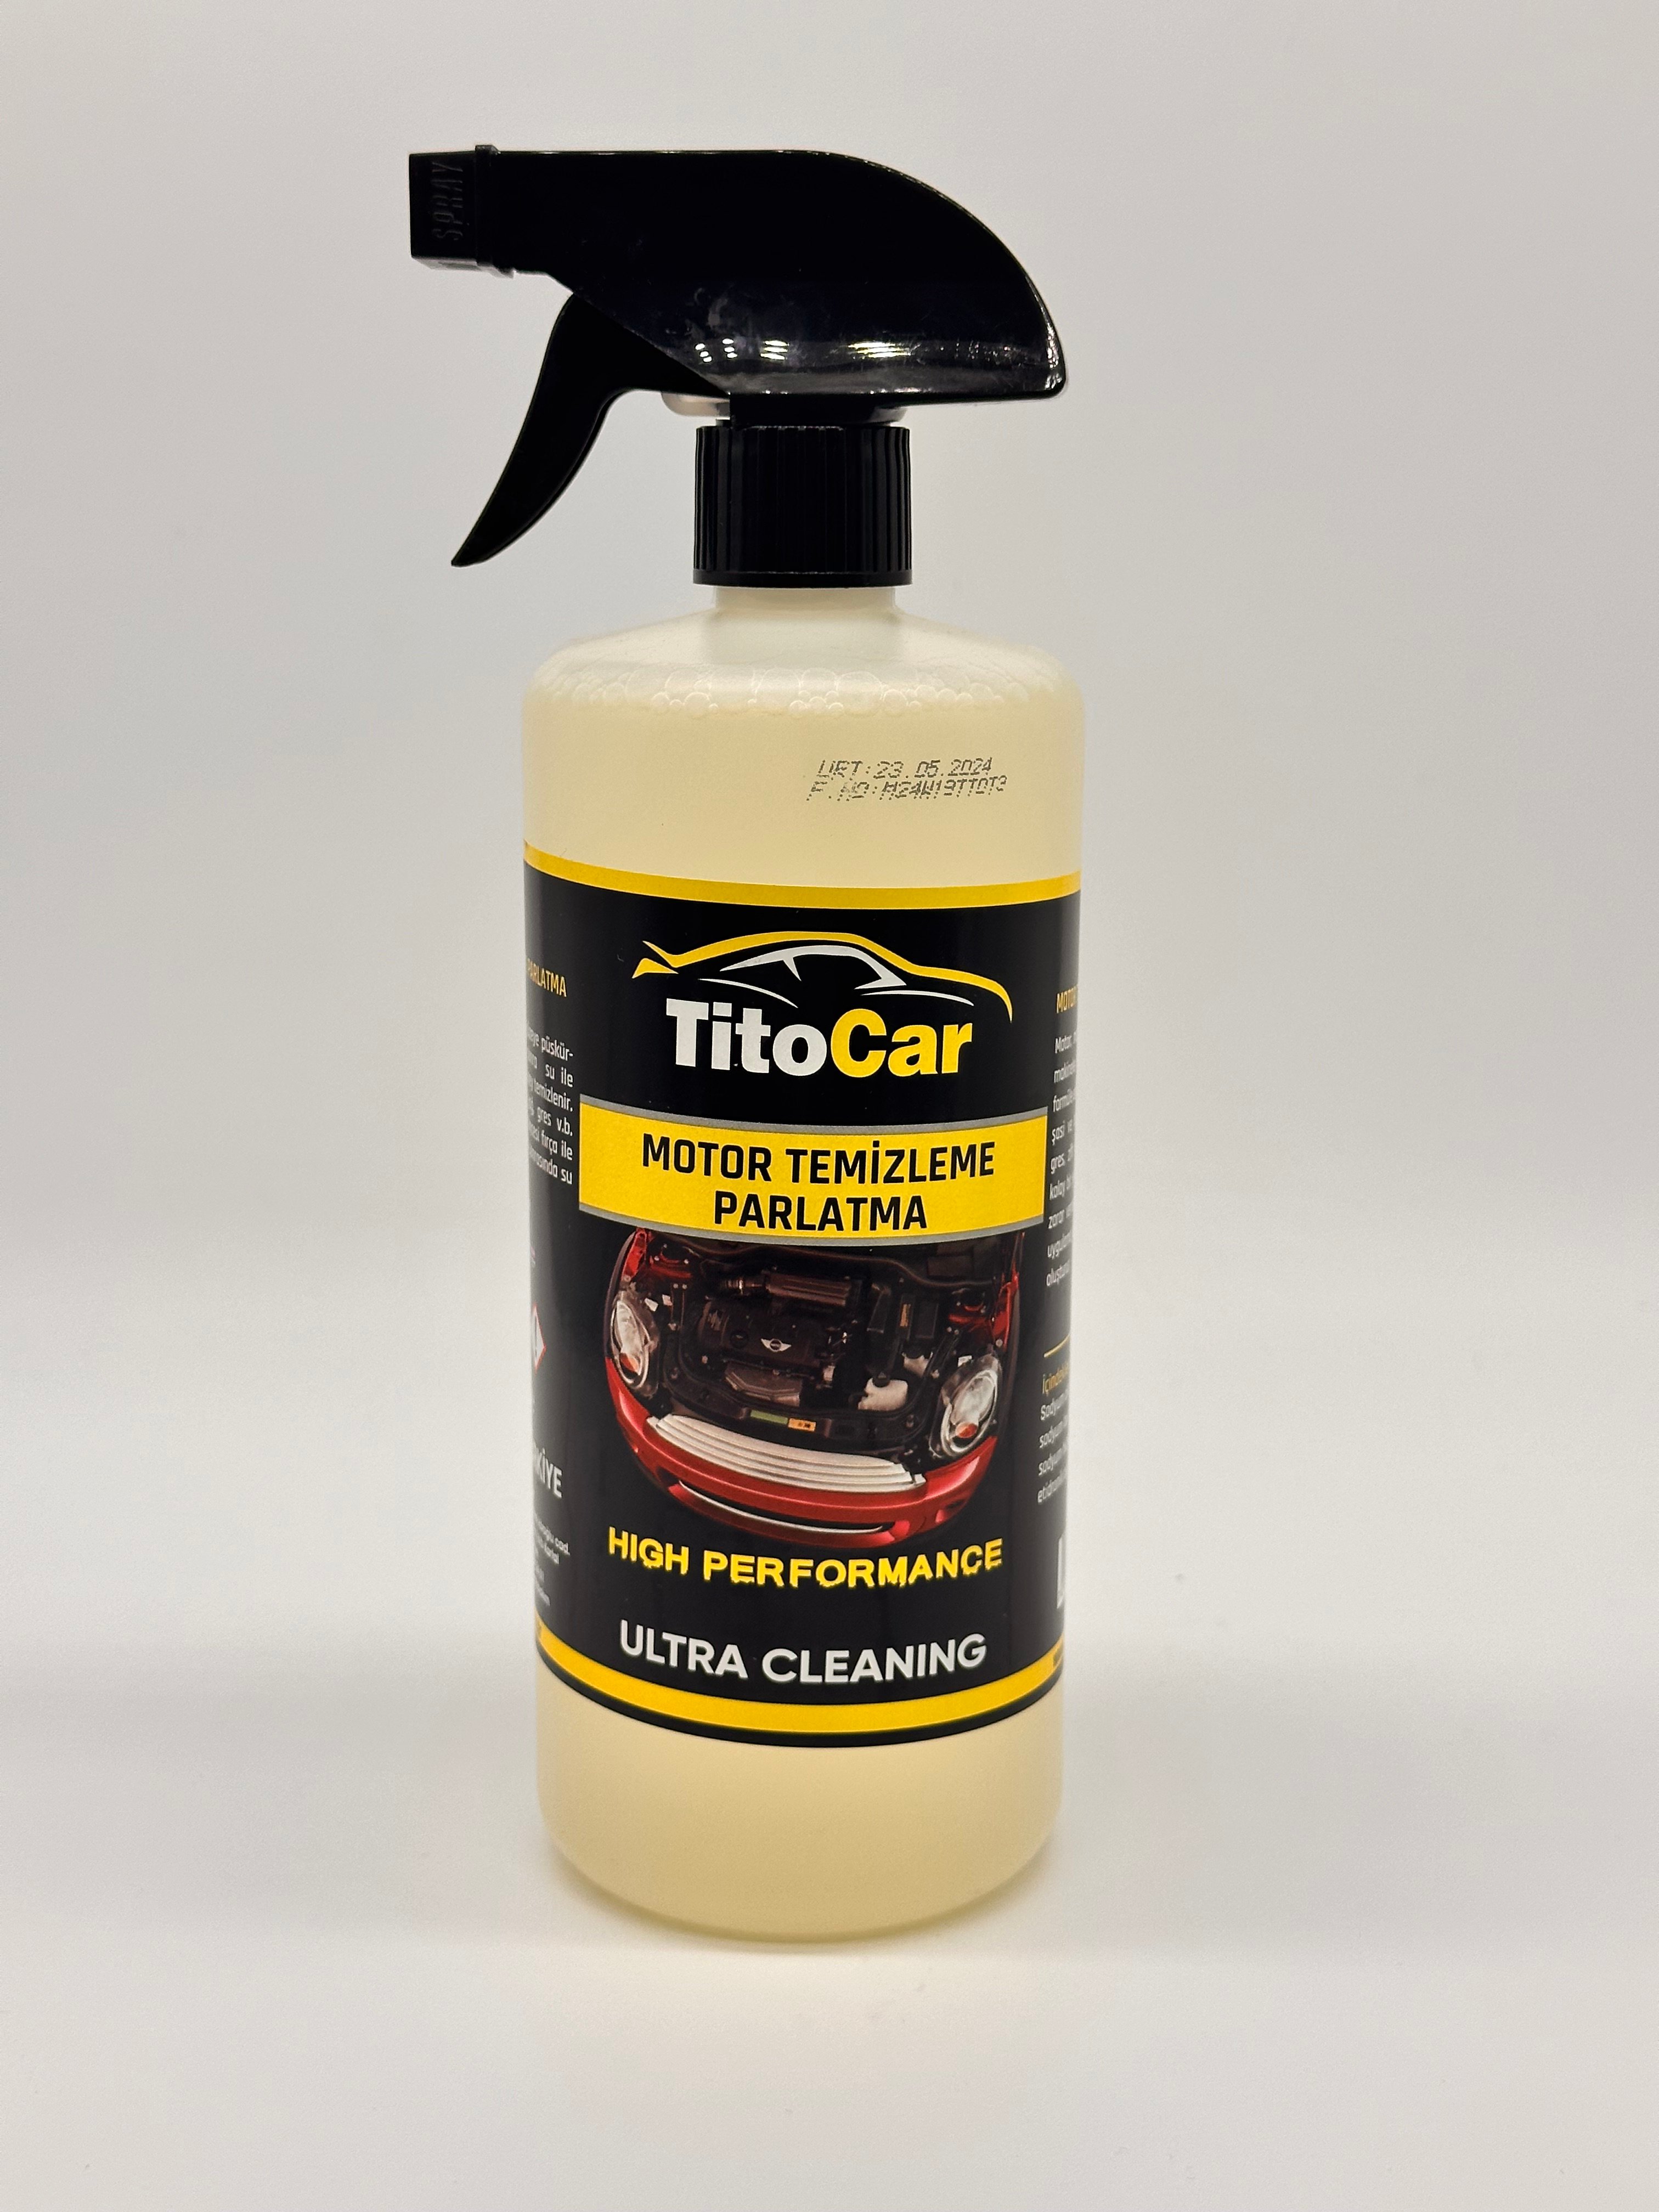 TitoCar Motor Temizleme Ve Parlatma Sıvısı 750 ml